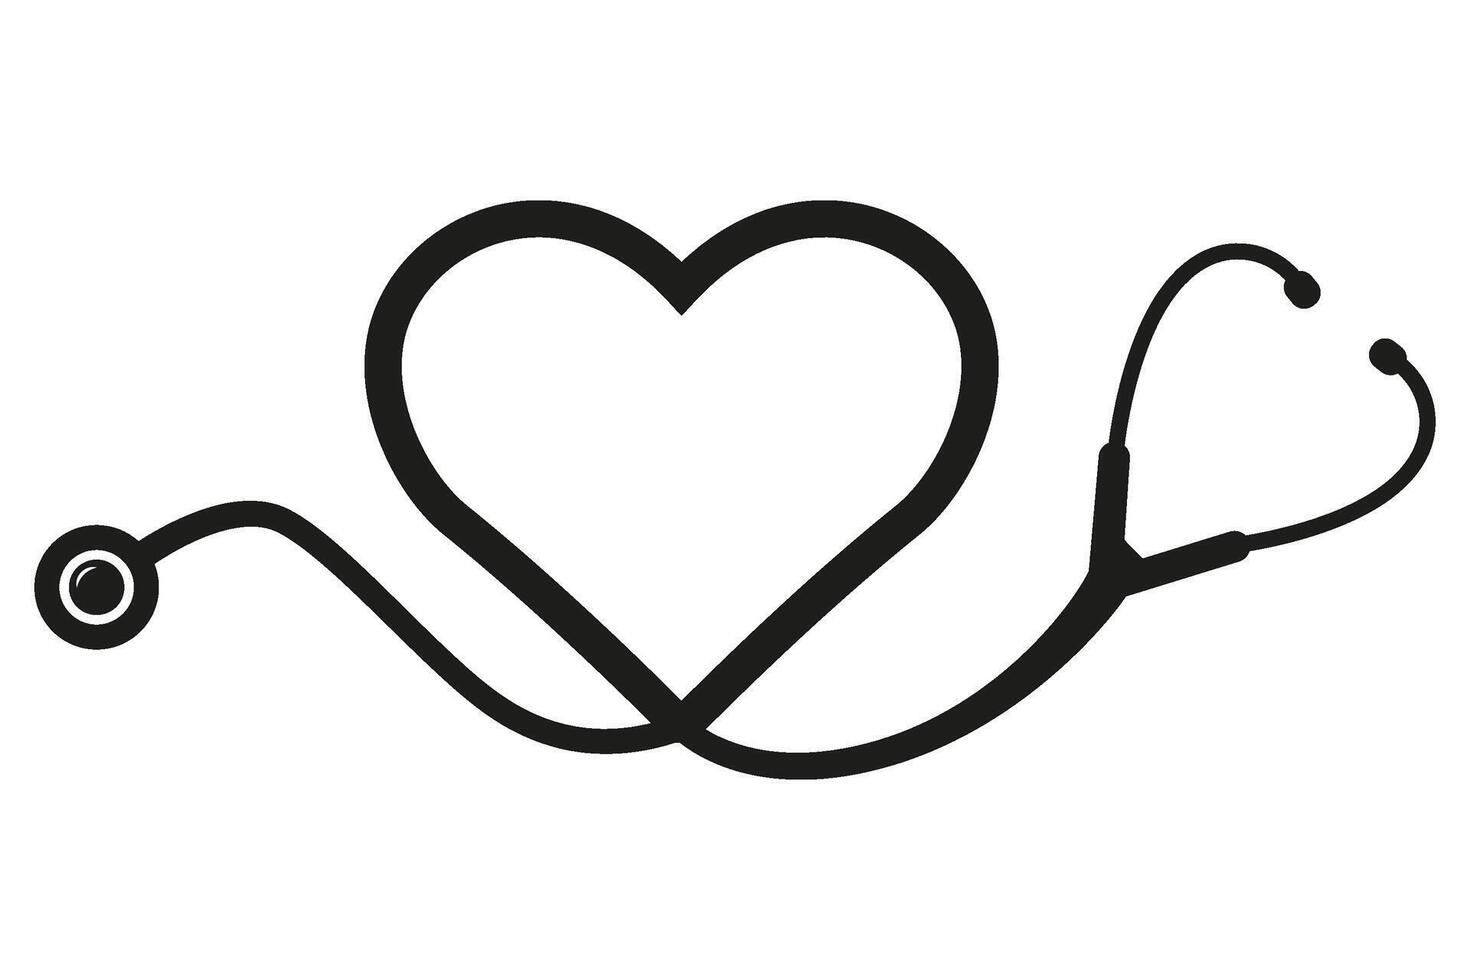 Stethoskop im Herz Form, Vektor Krankenschwester Instrument Symbol Illustration isoliert auf Weiß Hintergrund